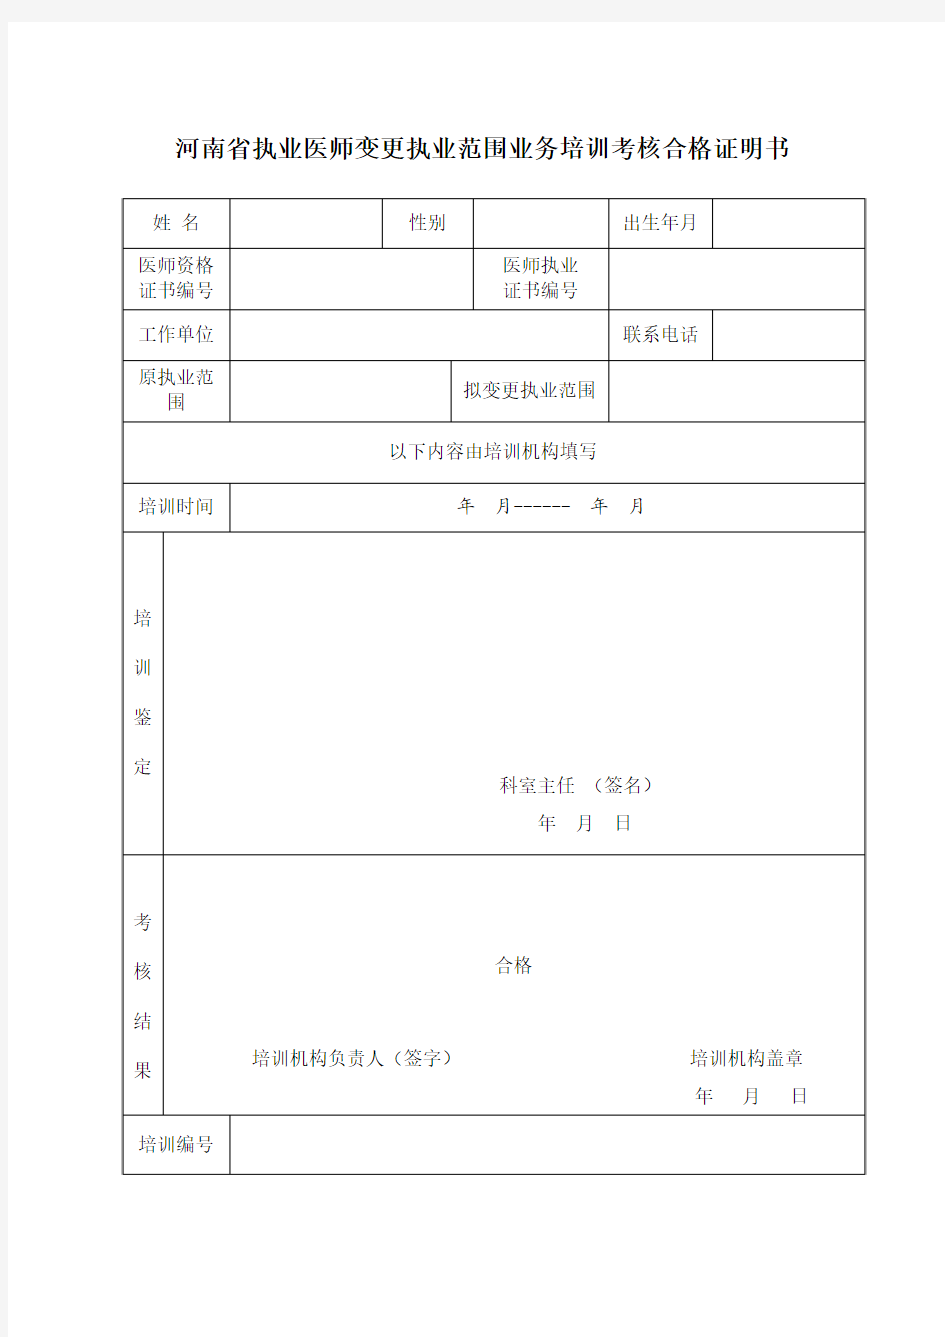 河南省执业医师变更执业范围业务培训考核合格证明书